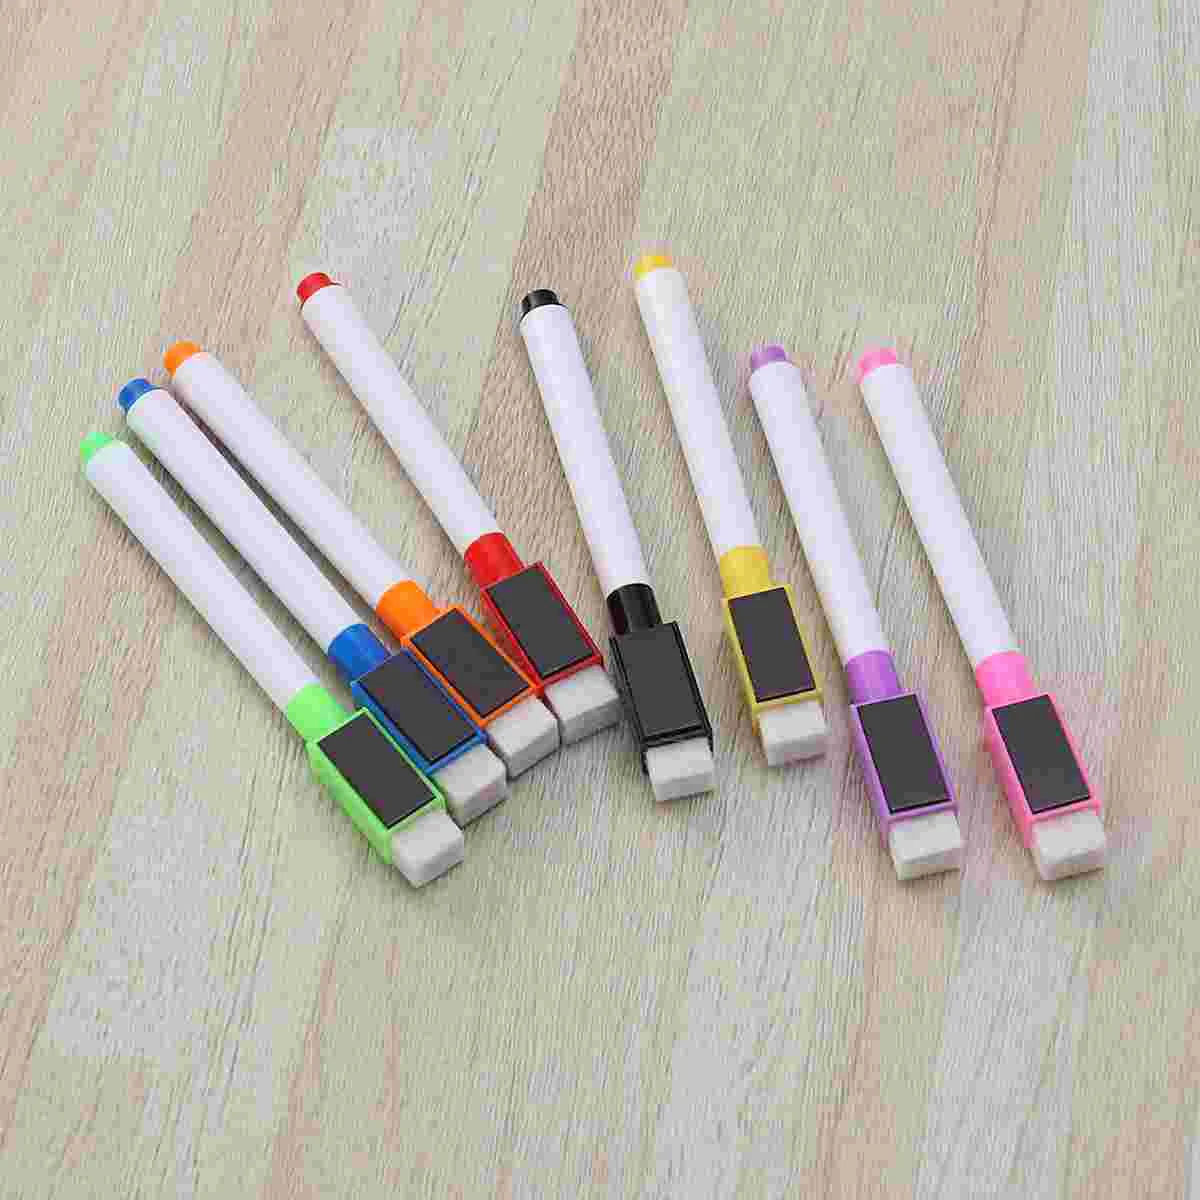 

8 шт. Магнитная цветная ручка для белой доски, черный, белый цвет, встроенный ластик, школьные принадлежности, детская ручка для рисования (ро...